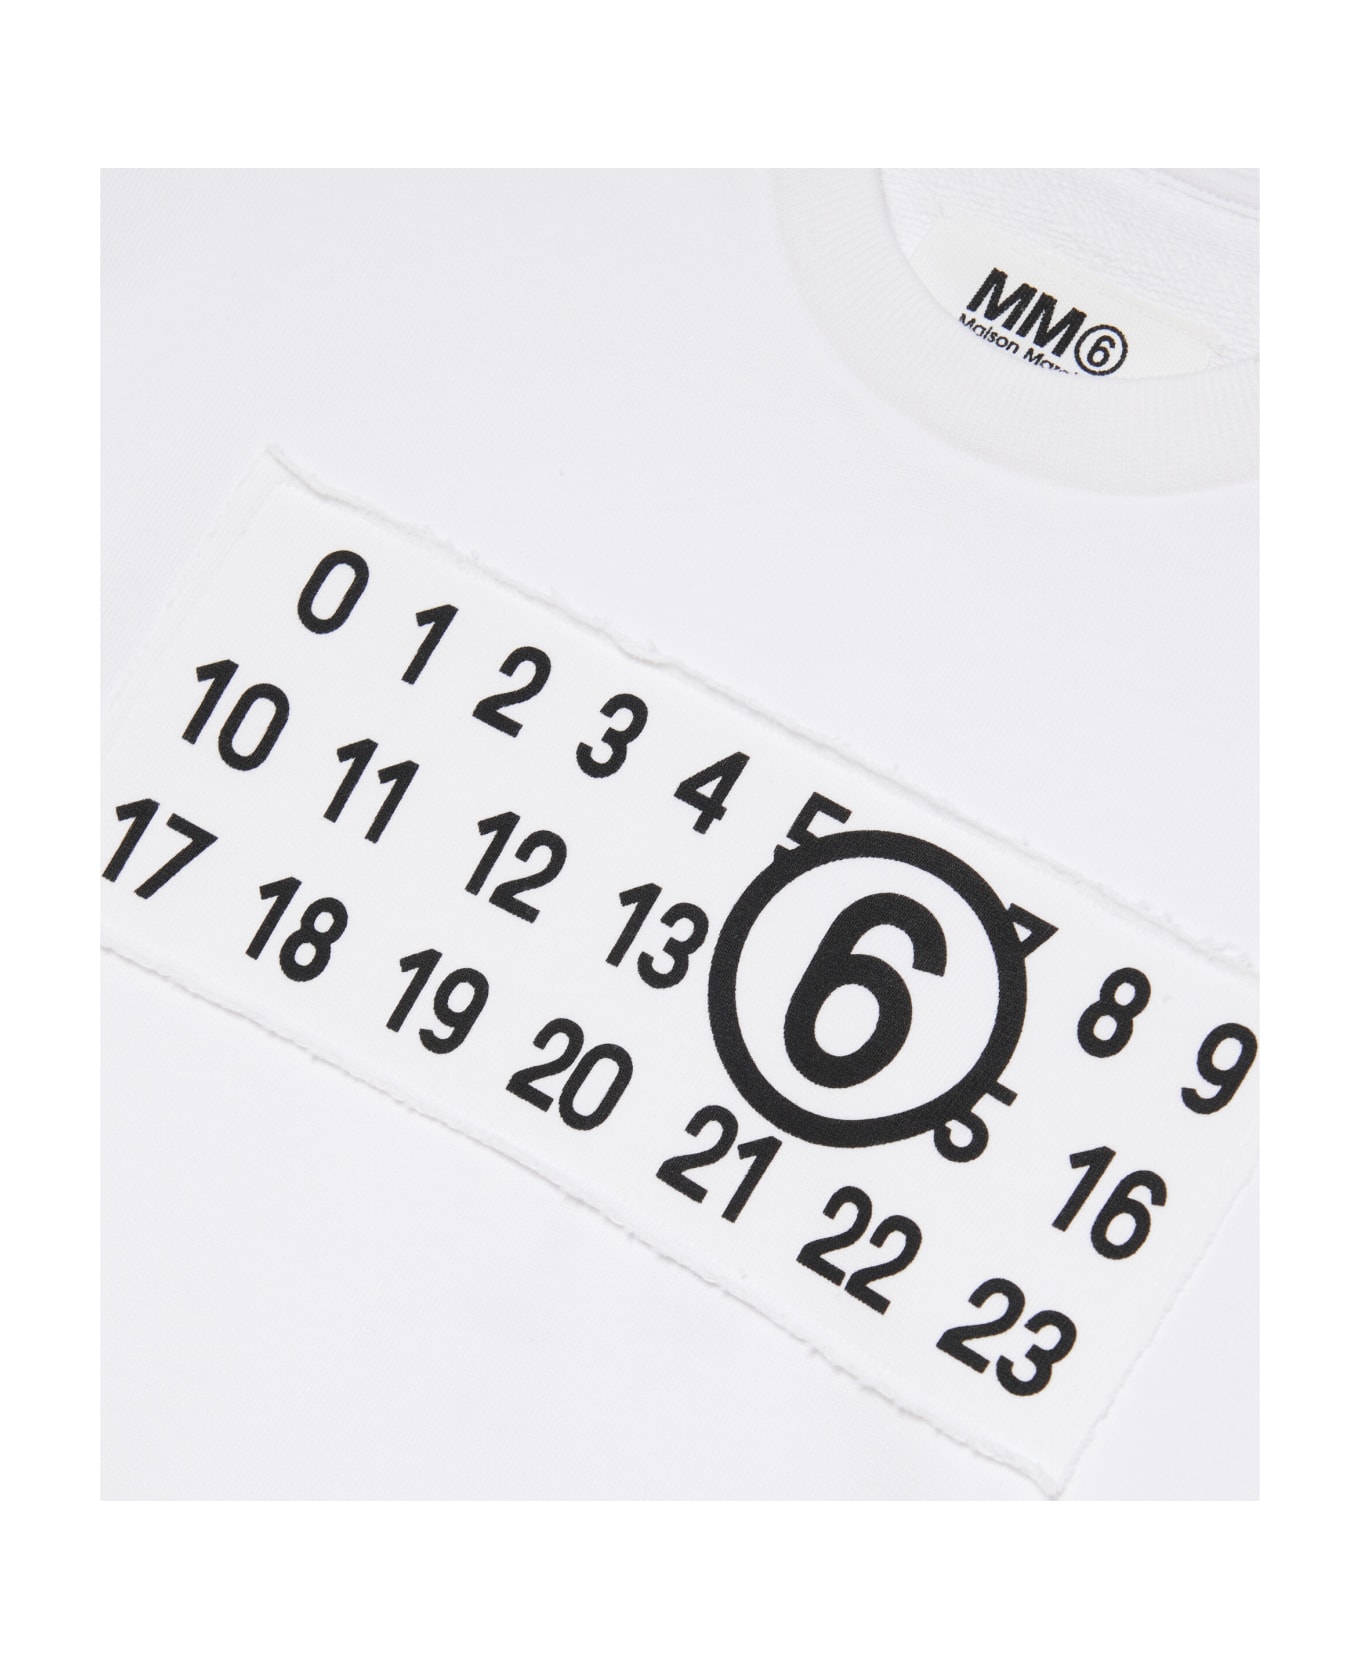 MM6 Maison Margiela Mm6s84u Sweat-shirt Maison Margiela Crew-neck Sweatshirt Branded With Numeric Logo - White